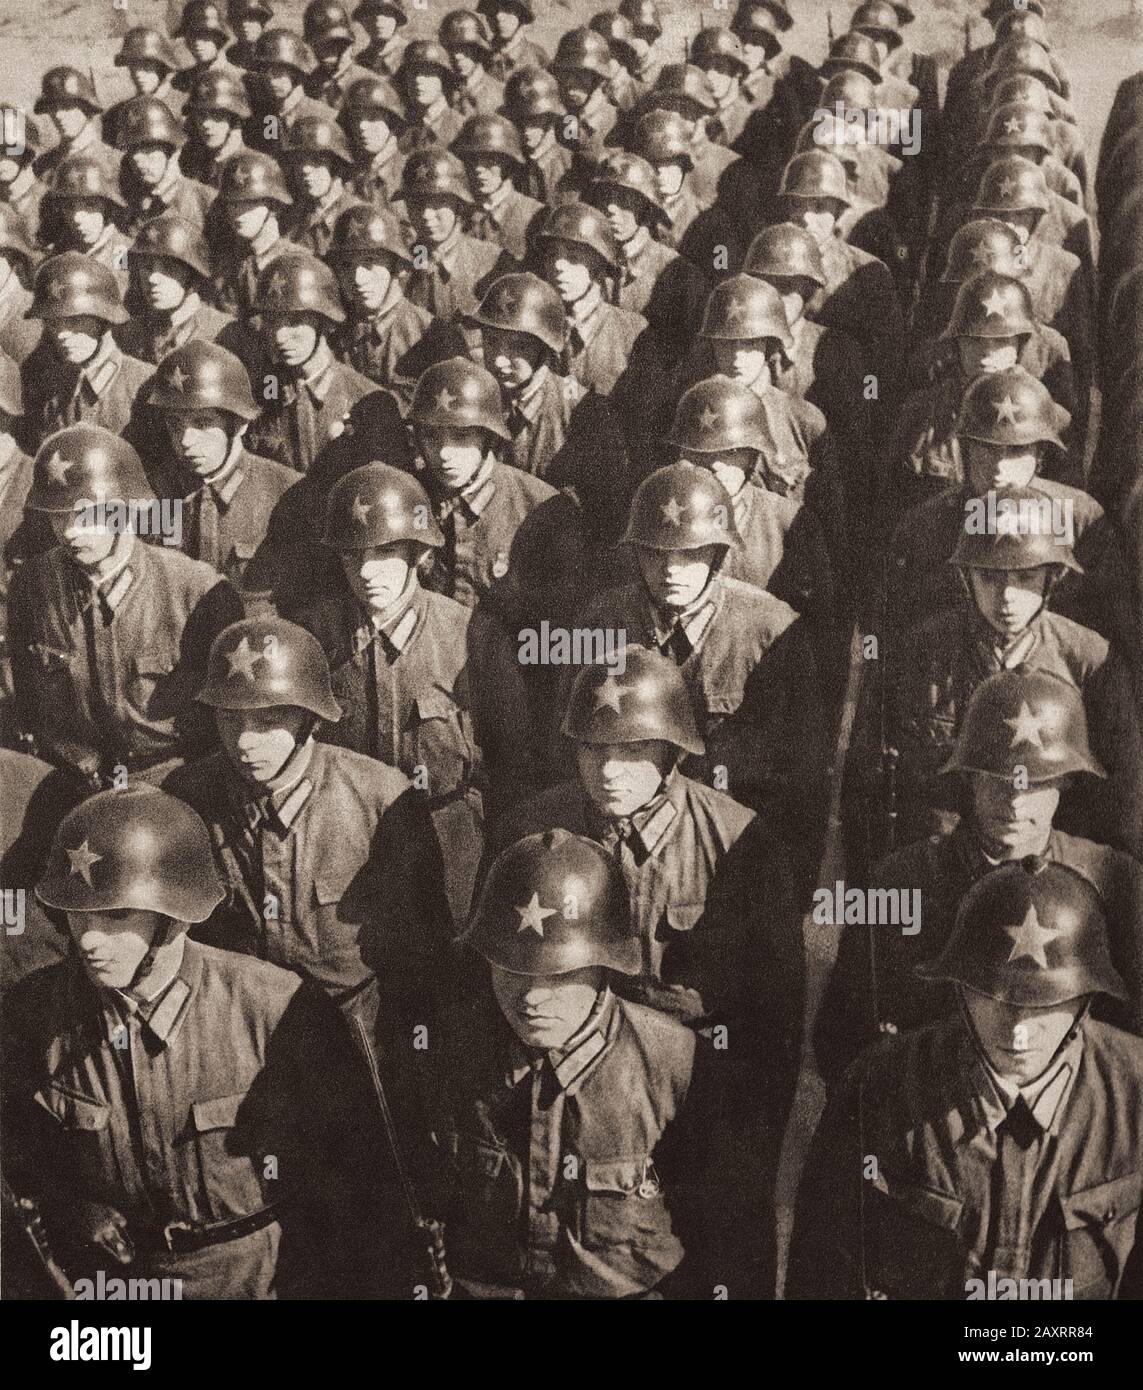 Esercito Rosso. Dal libro di propaganda sovietico del 1937. Foto Stock